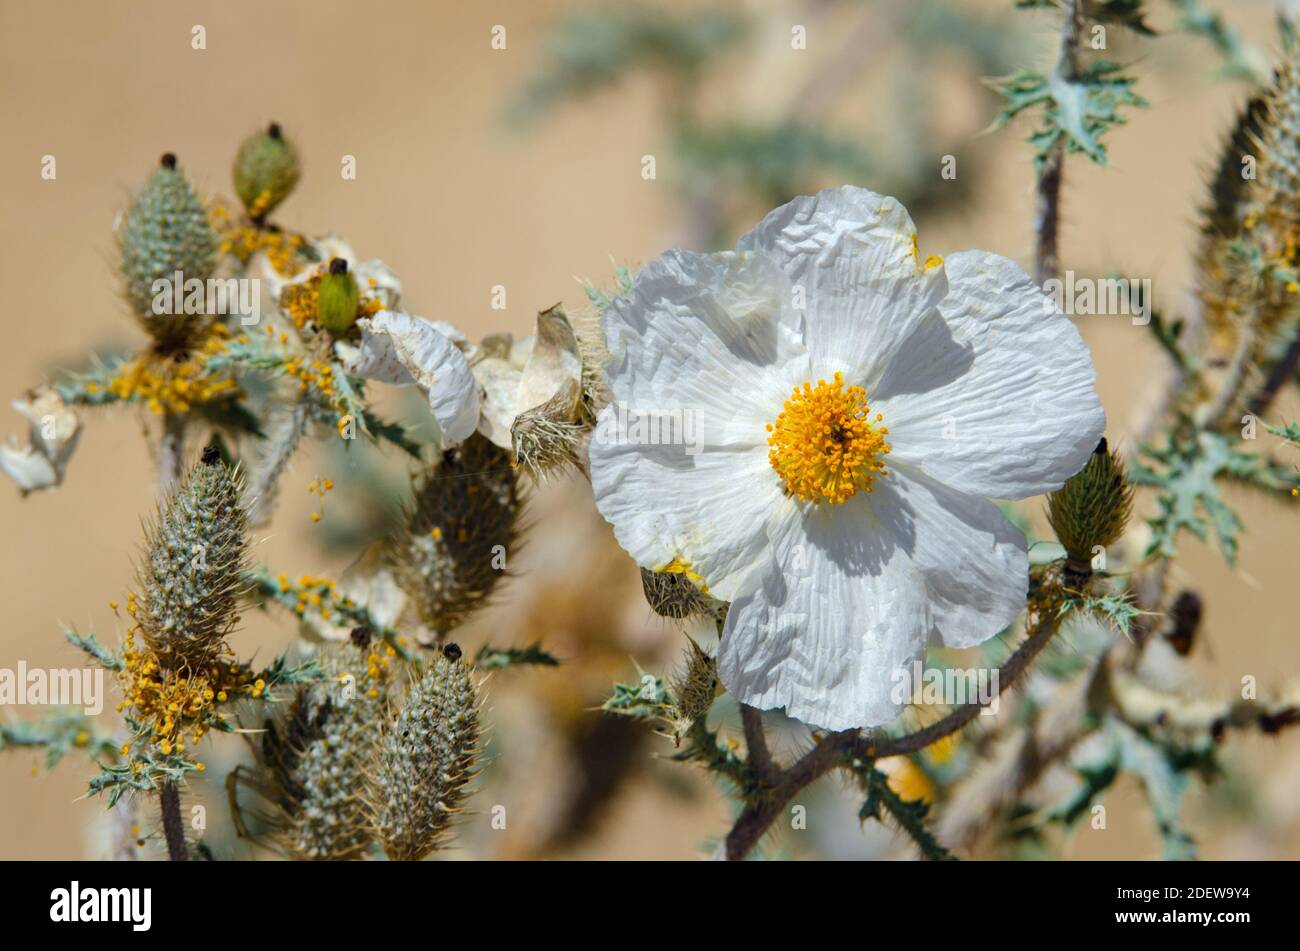 Southwestern Prickly Poppy (Argemone pleiacantha) Stock Photo